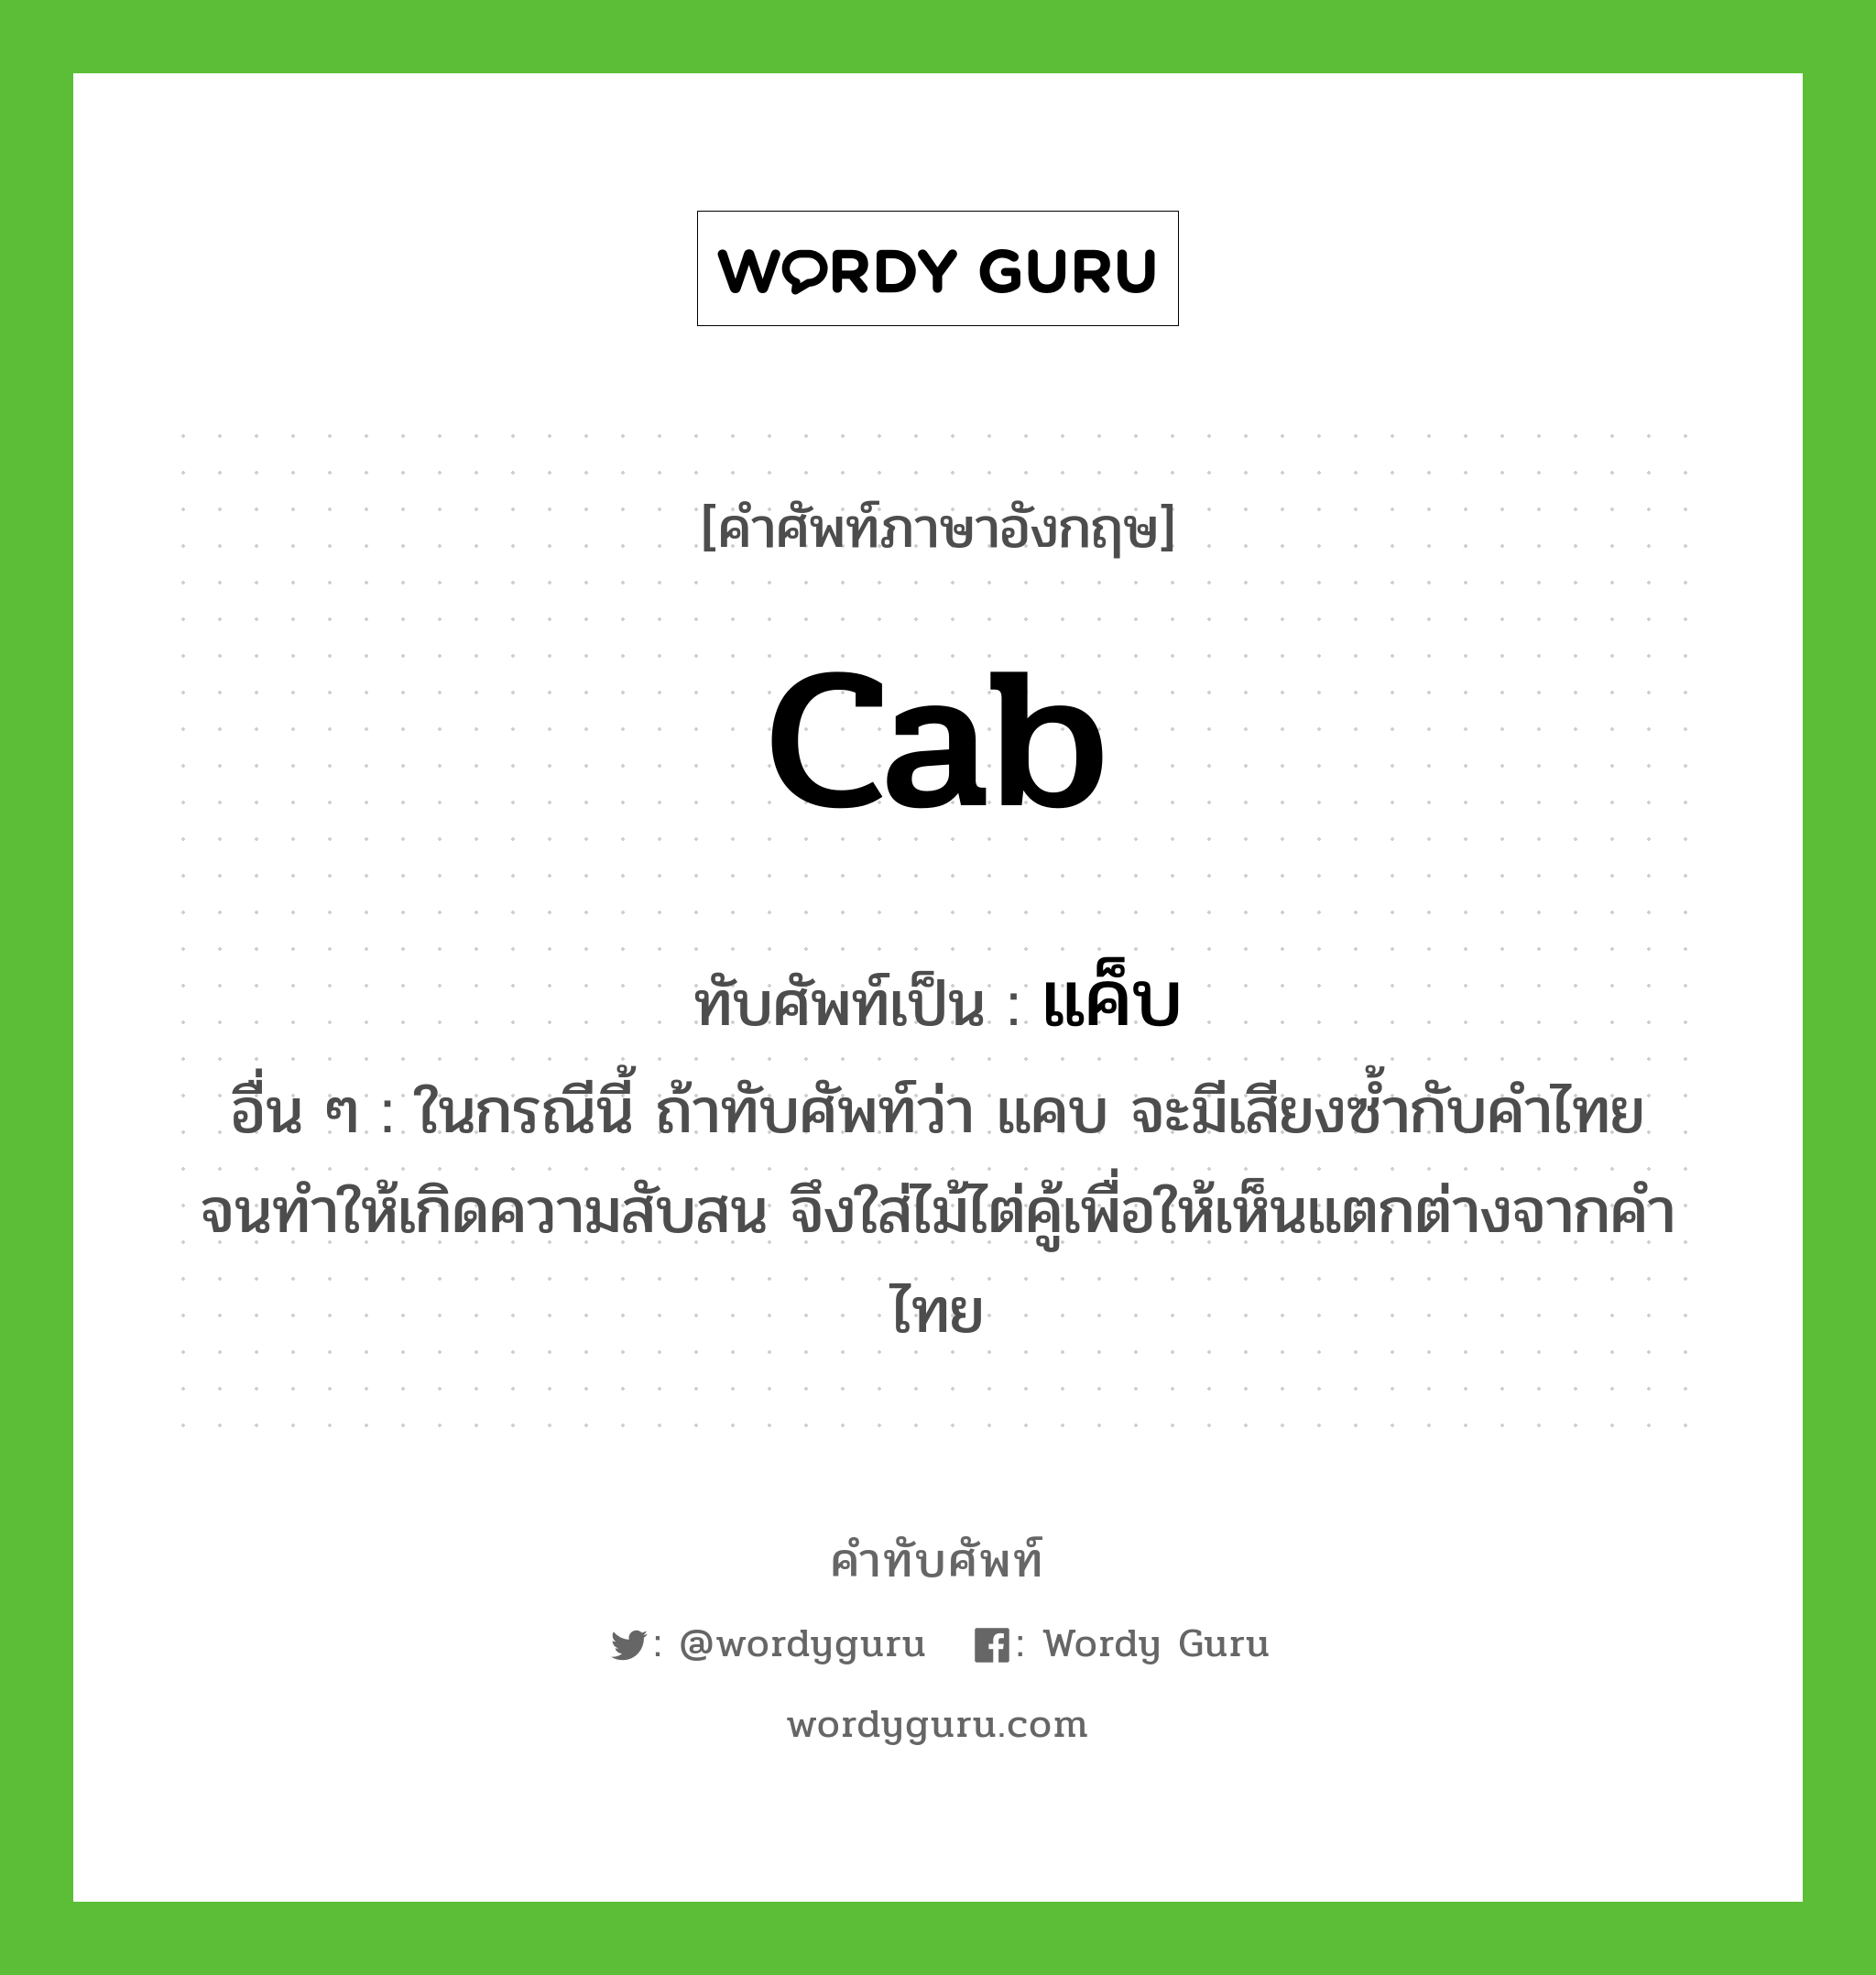 cab เขียนเป็นคำไทยว่าอะไร?, คำศัพท์ภาษาอังกฤษ cab ทับศัพท์เป็น แค็บ อื่น ๆ ในกรณีนี้ ถ้าทับศัพท์ว่า แคบ จะมีเสียงซ้ำกับคําไทย จนทําให้เกิดความสับสน จึงใส่ไม้ไต่คู้เพื่อให้เห็นแตกต่างจากคําไทย